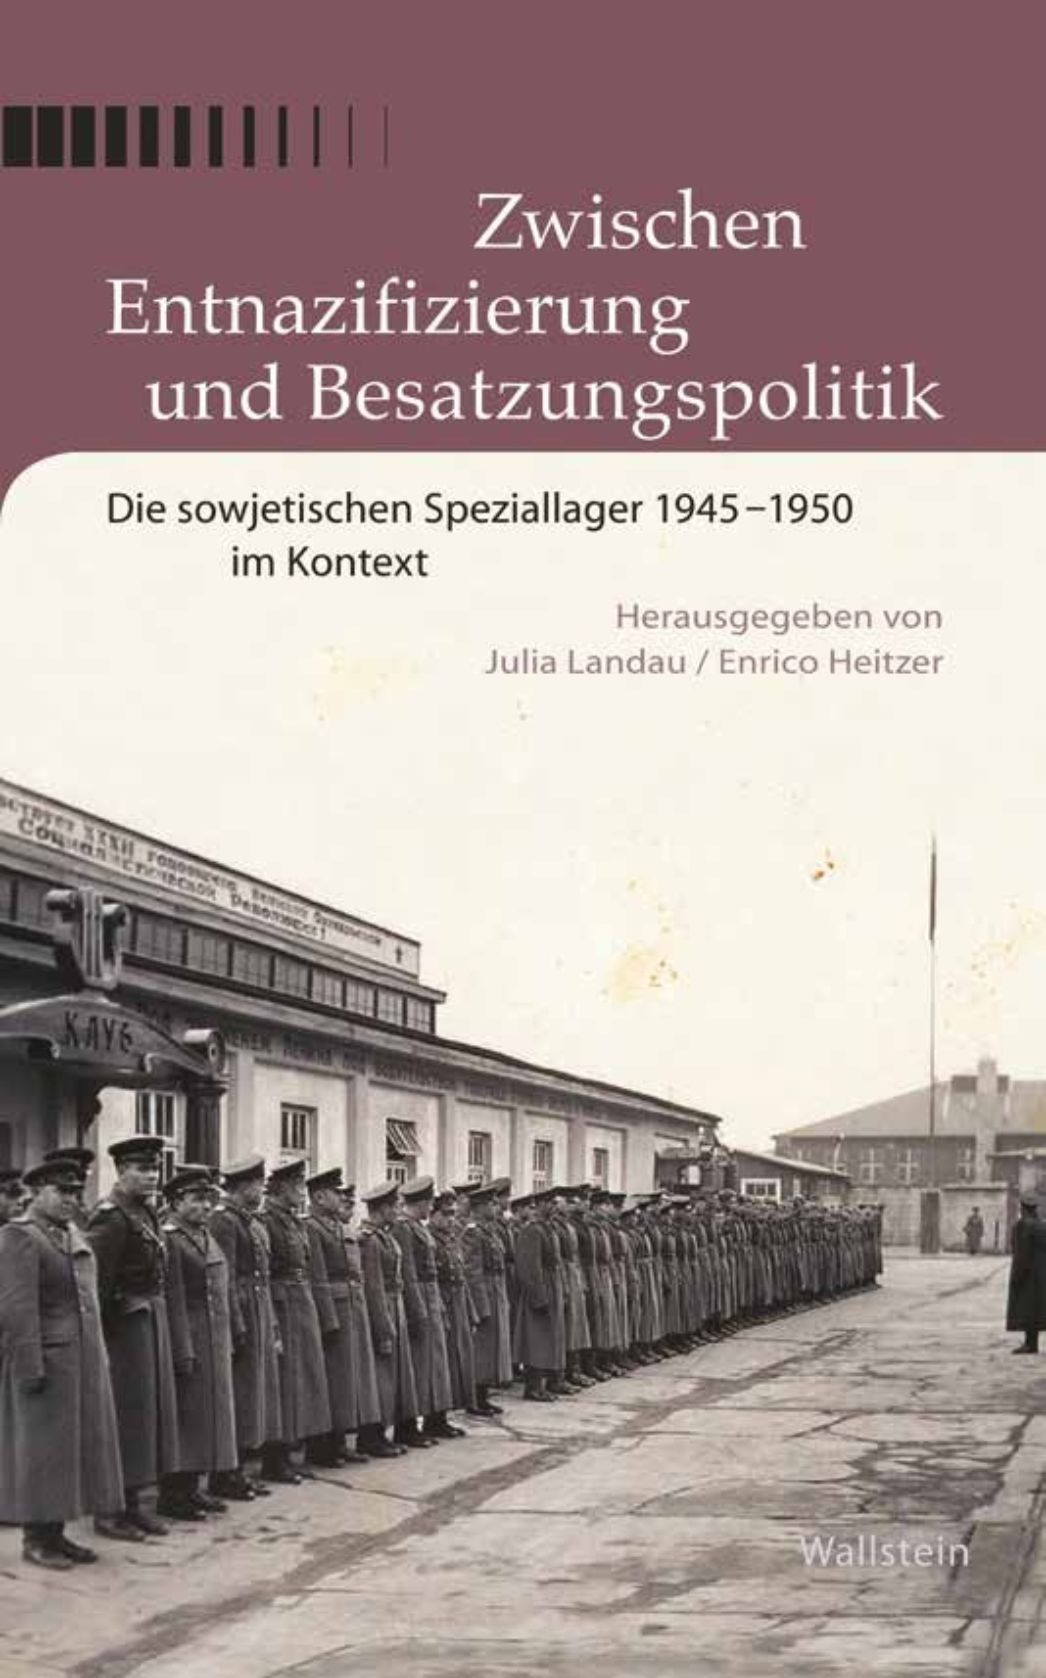 Cover "Zwischen Entnazifizierung und Besatzungspolitik" 